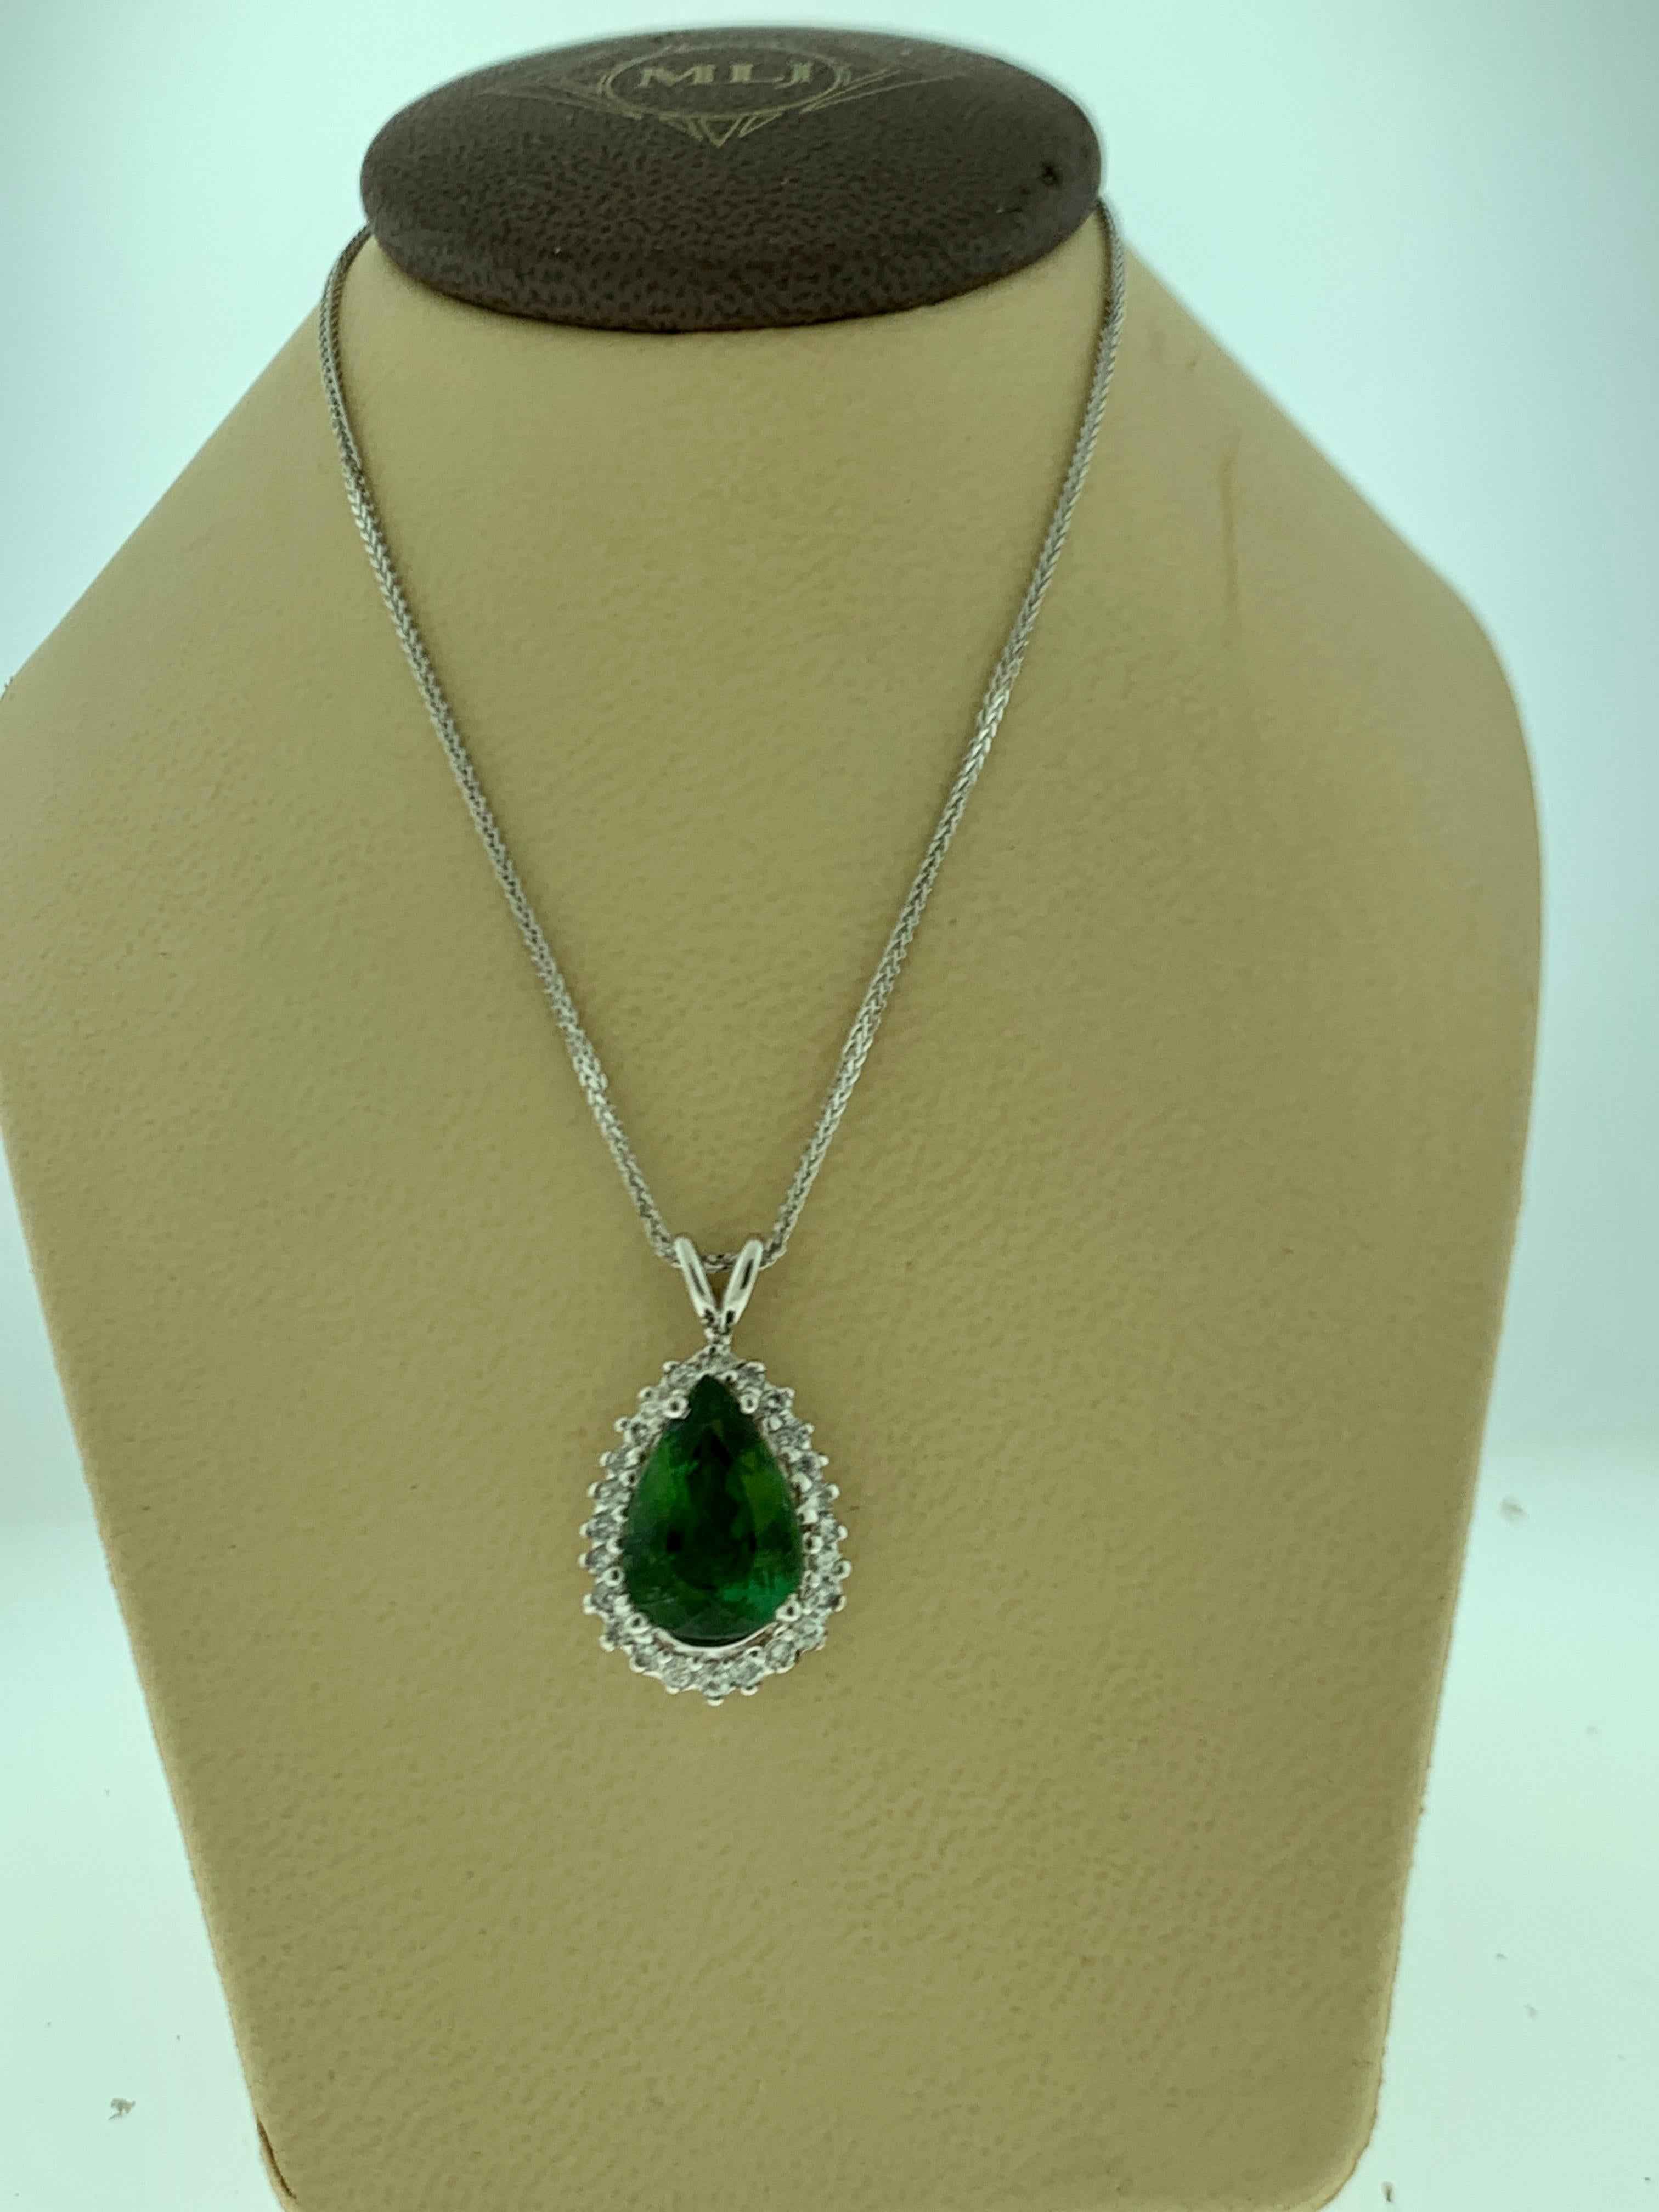 8 Carat Green Tourmaline and 1.5 Carat Diamond Pendant or Necklace 14 Karat Gold 3